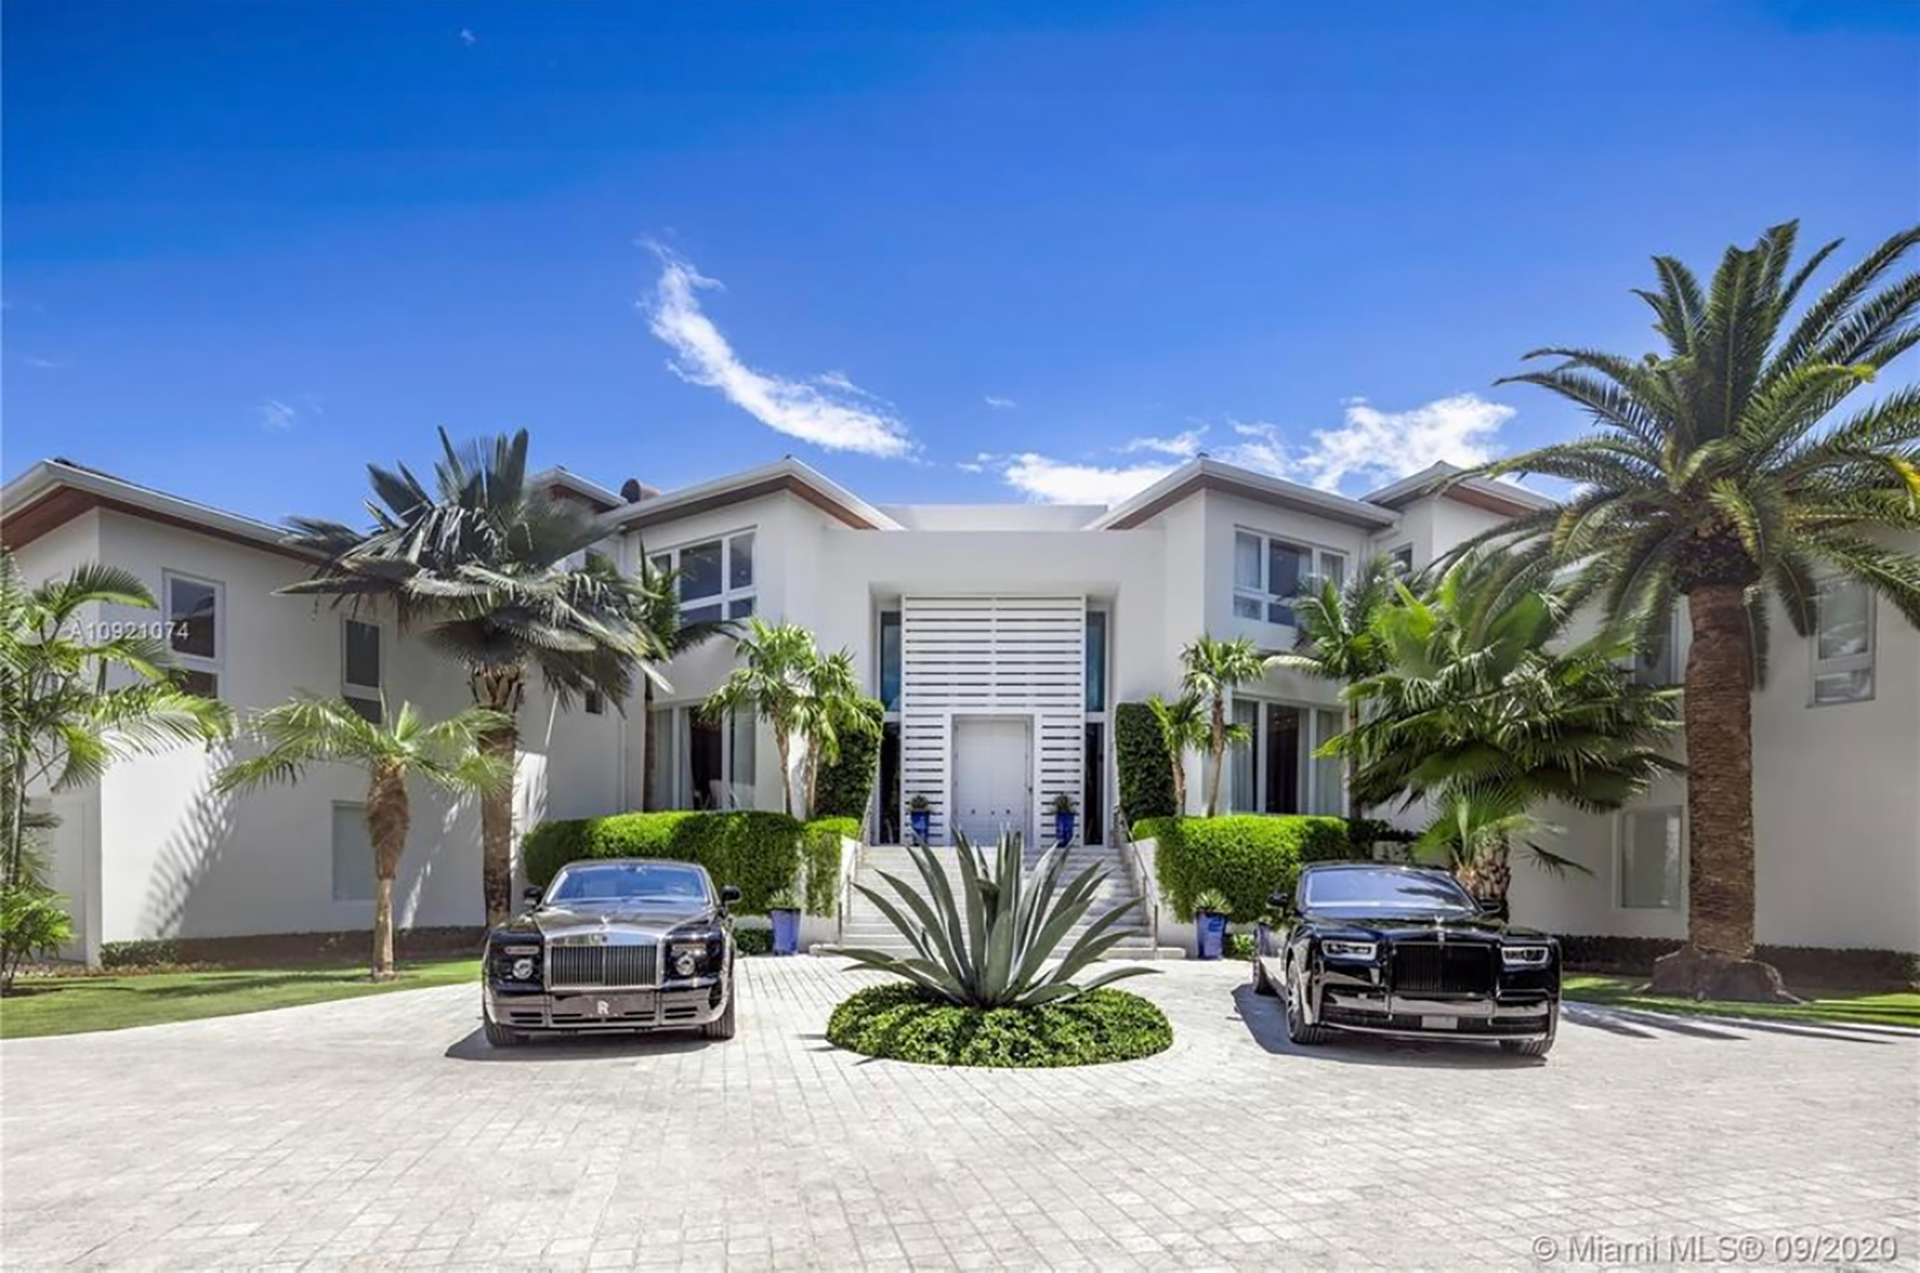 Cómo son las cinco mansiones más costosas a la venta en Miami - Infobae